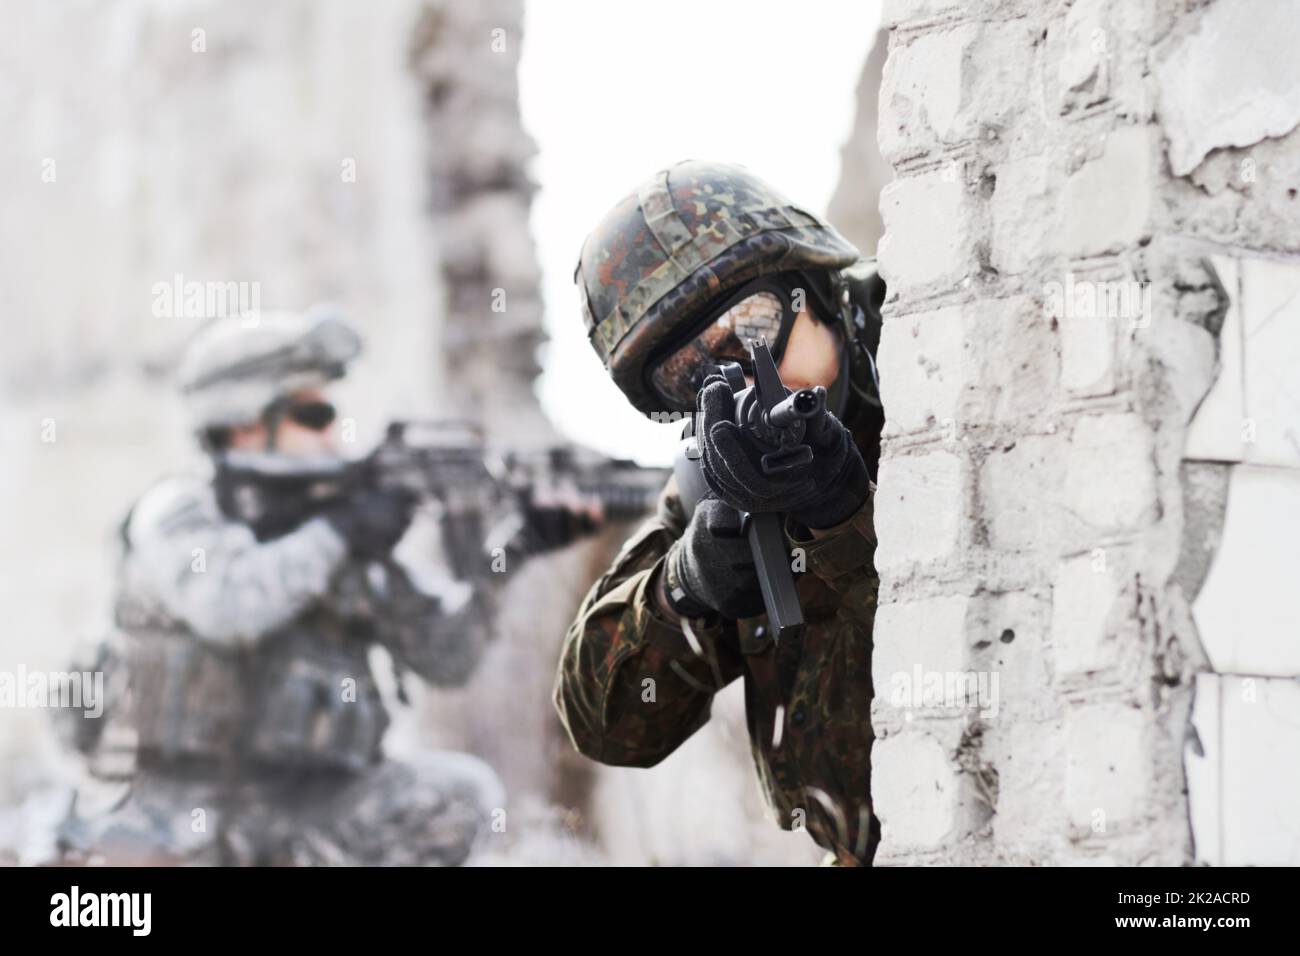 Force de défense dynamique. Un soldat qui se tourne autour d'un mur tout en pointant une arme à feu vers la caméra lors d'une rade sur un bâtiment endommagé. Banque D'Images